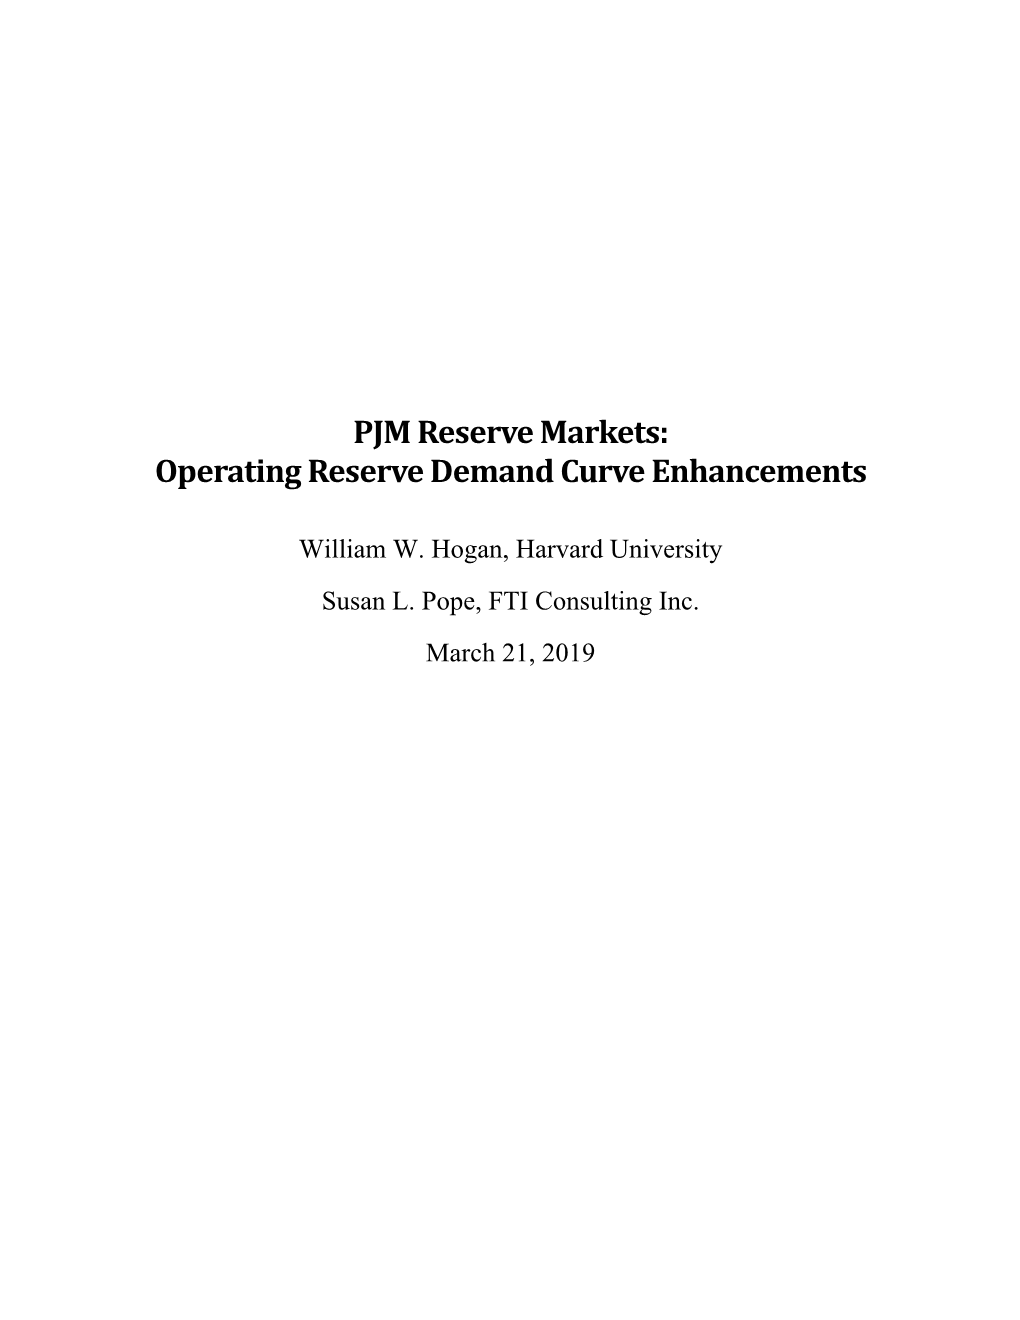 PJM Reserve Markets: Operating Reserve Demand Curve Enhancements